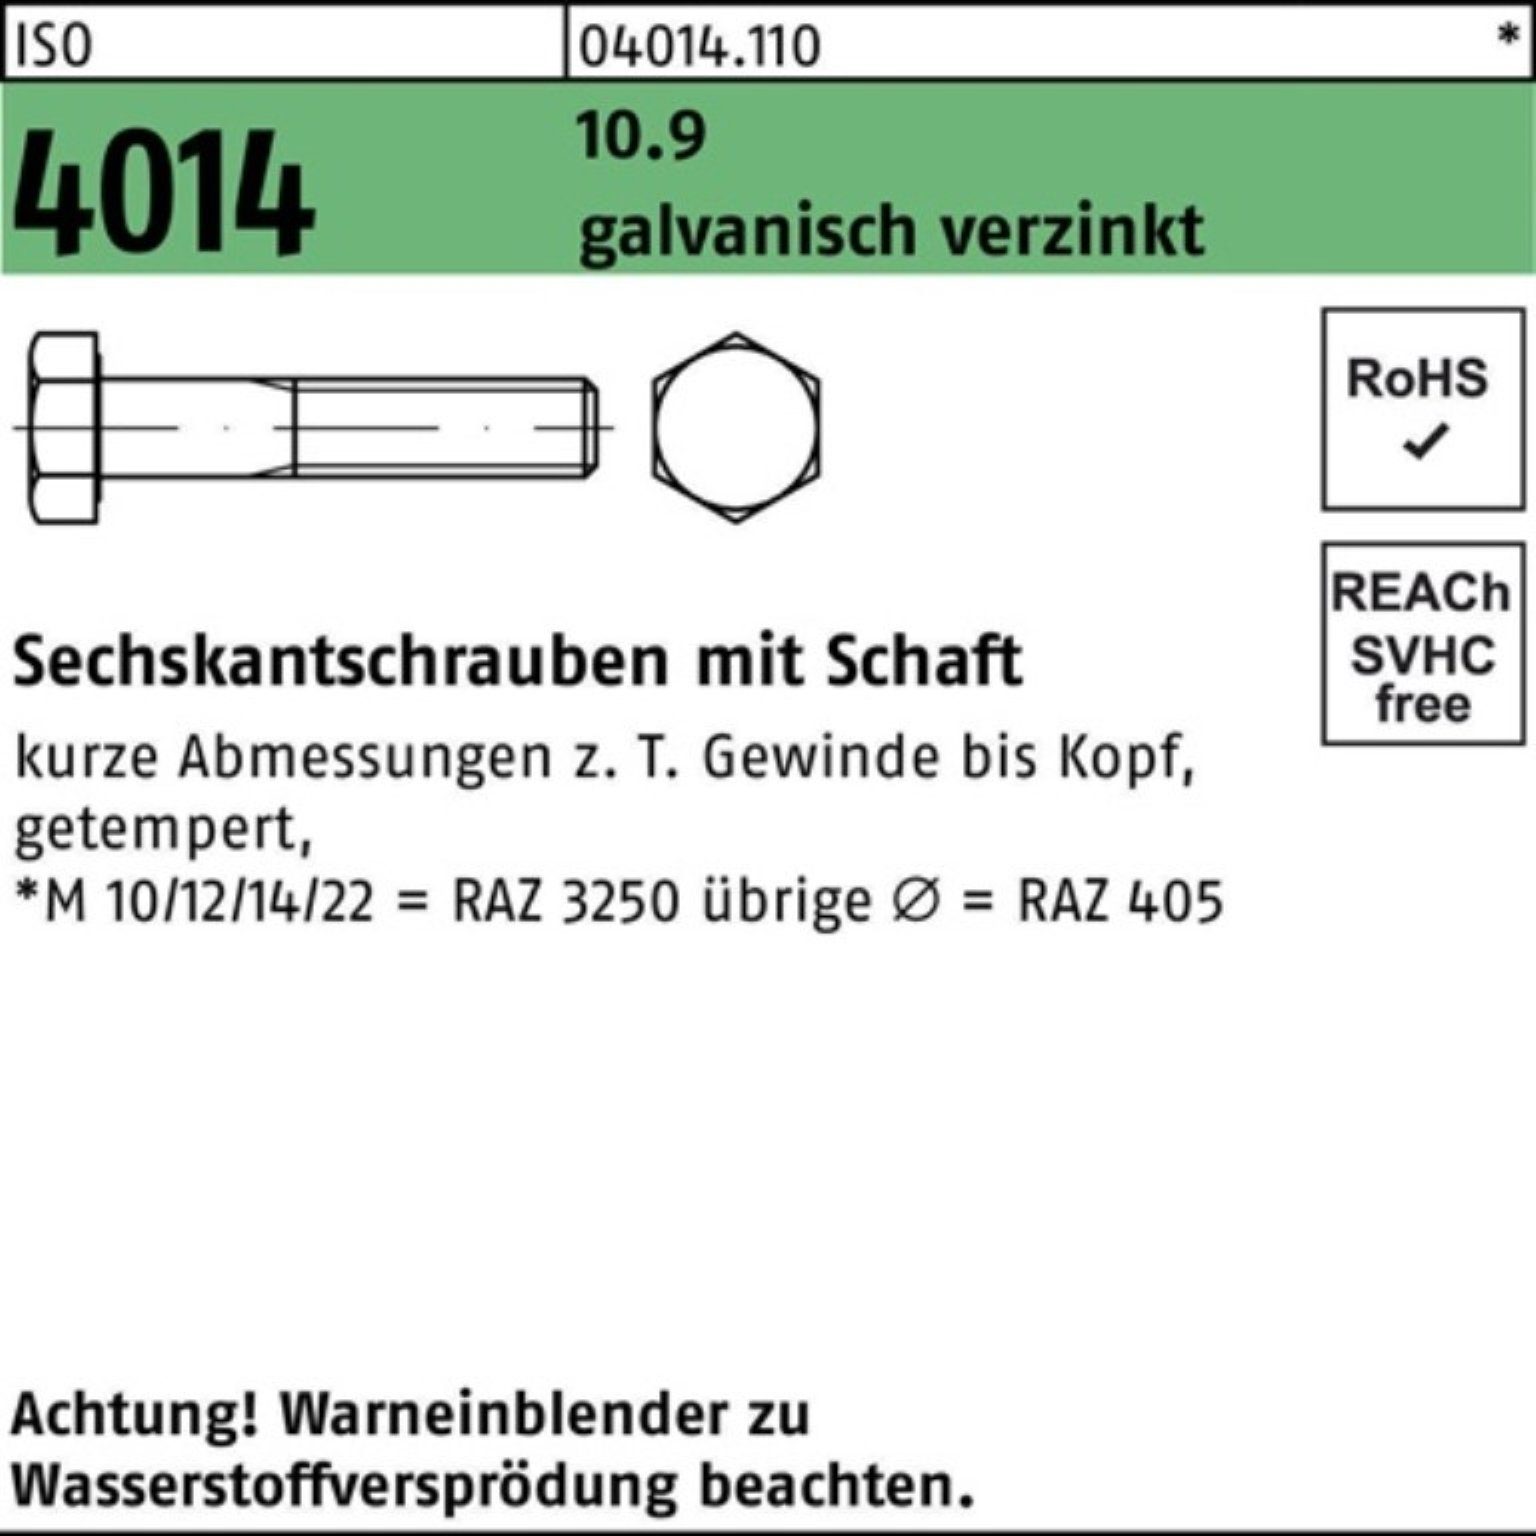 Schaft Sechskantschraube Pack galv.verz. 130 4014 M10x Bufab ISO 100er 10.9 Sechskantschraube